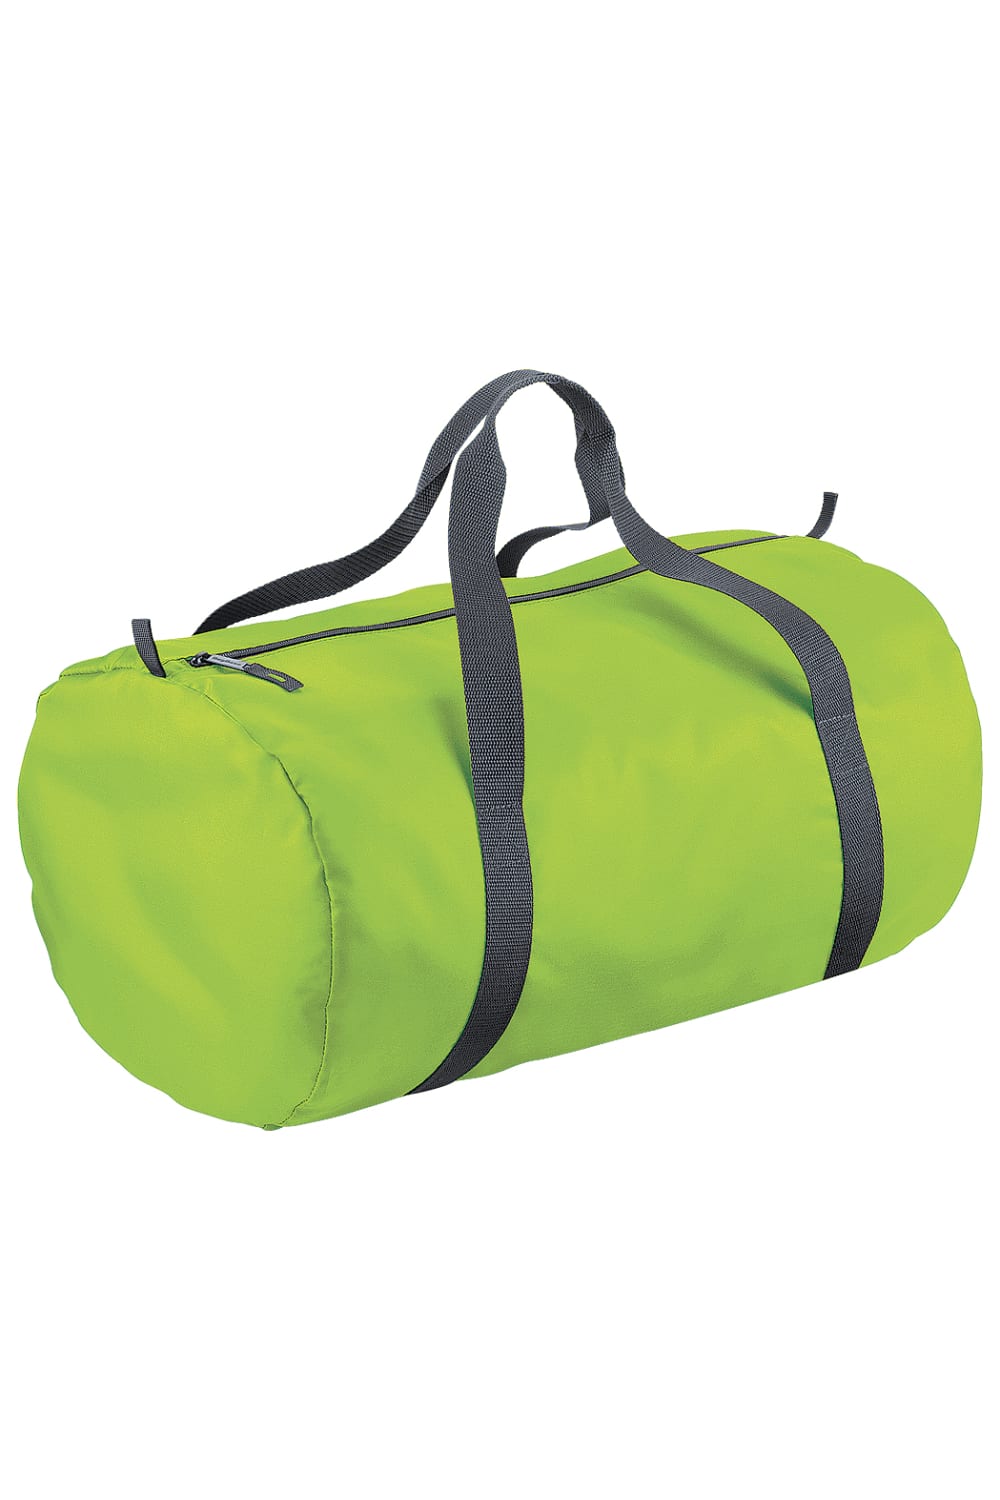 Packaway Barrel Bag/Duffel Water Resistant Travel Bag (8 Gallons) - Lime Green